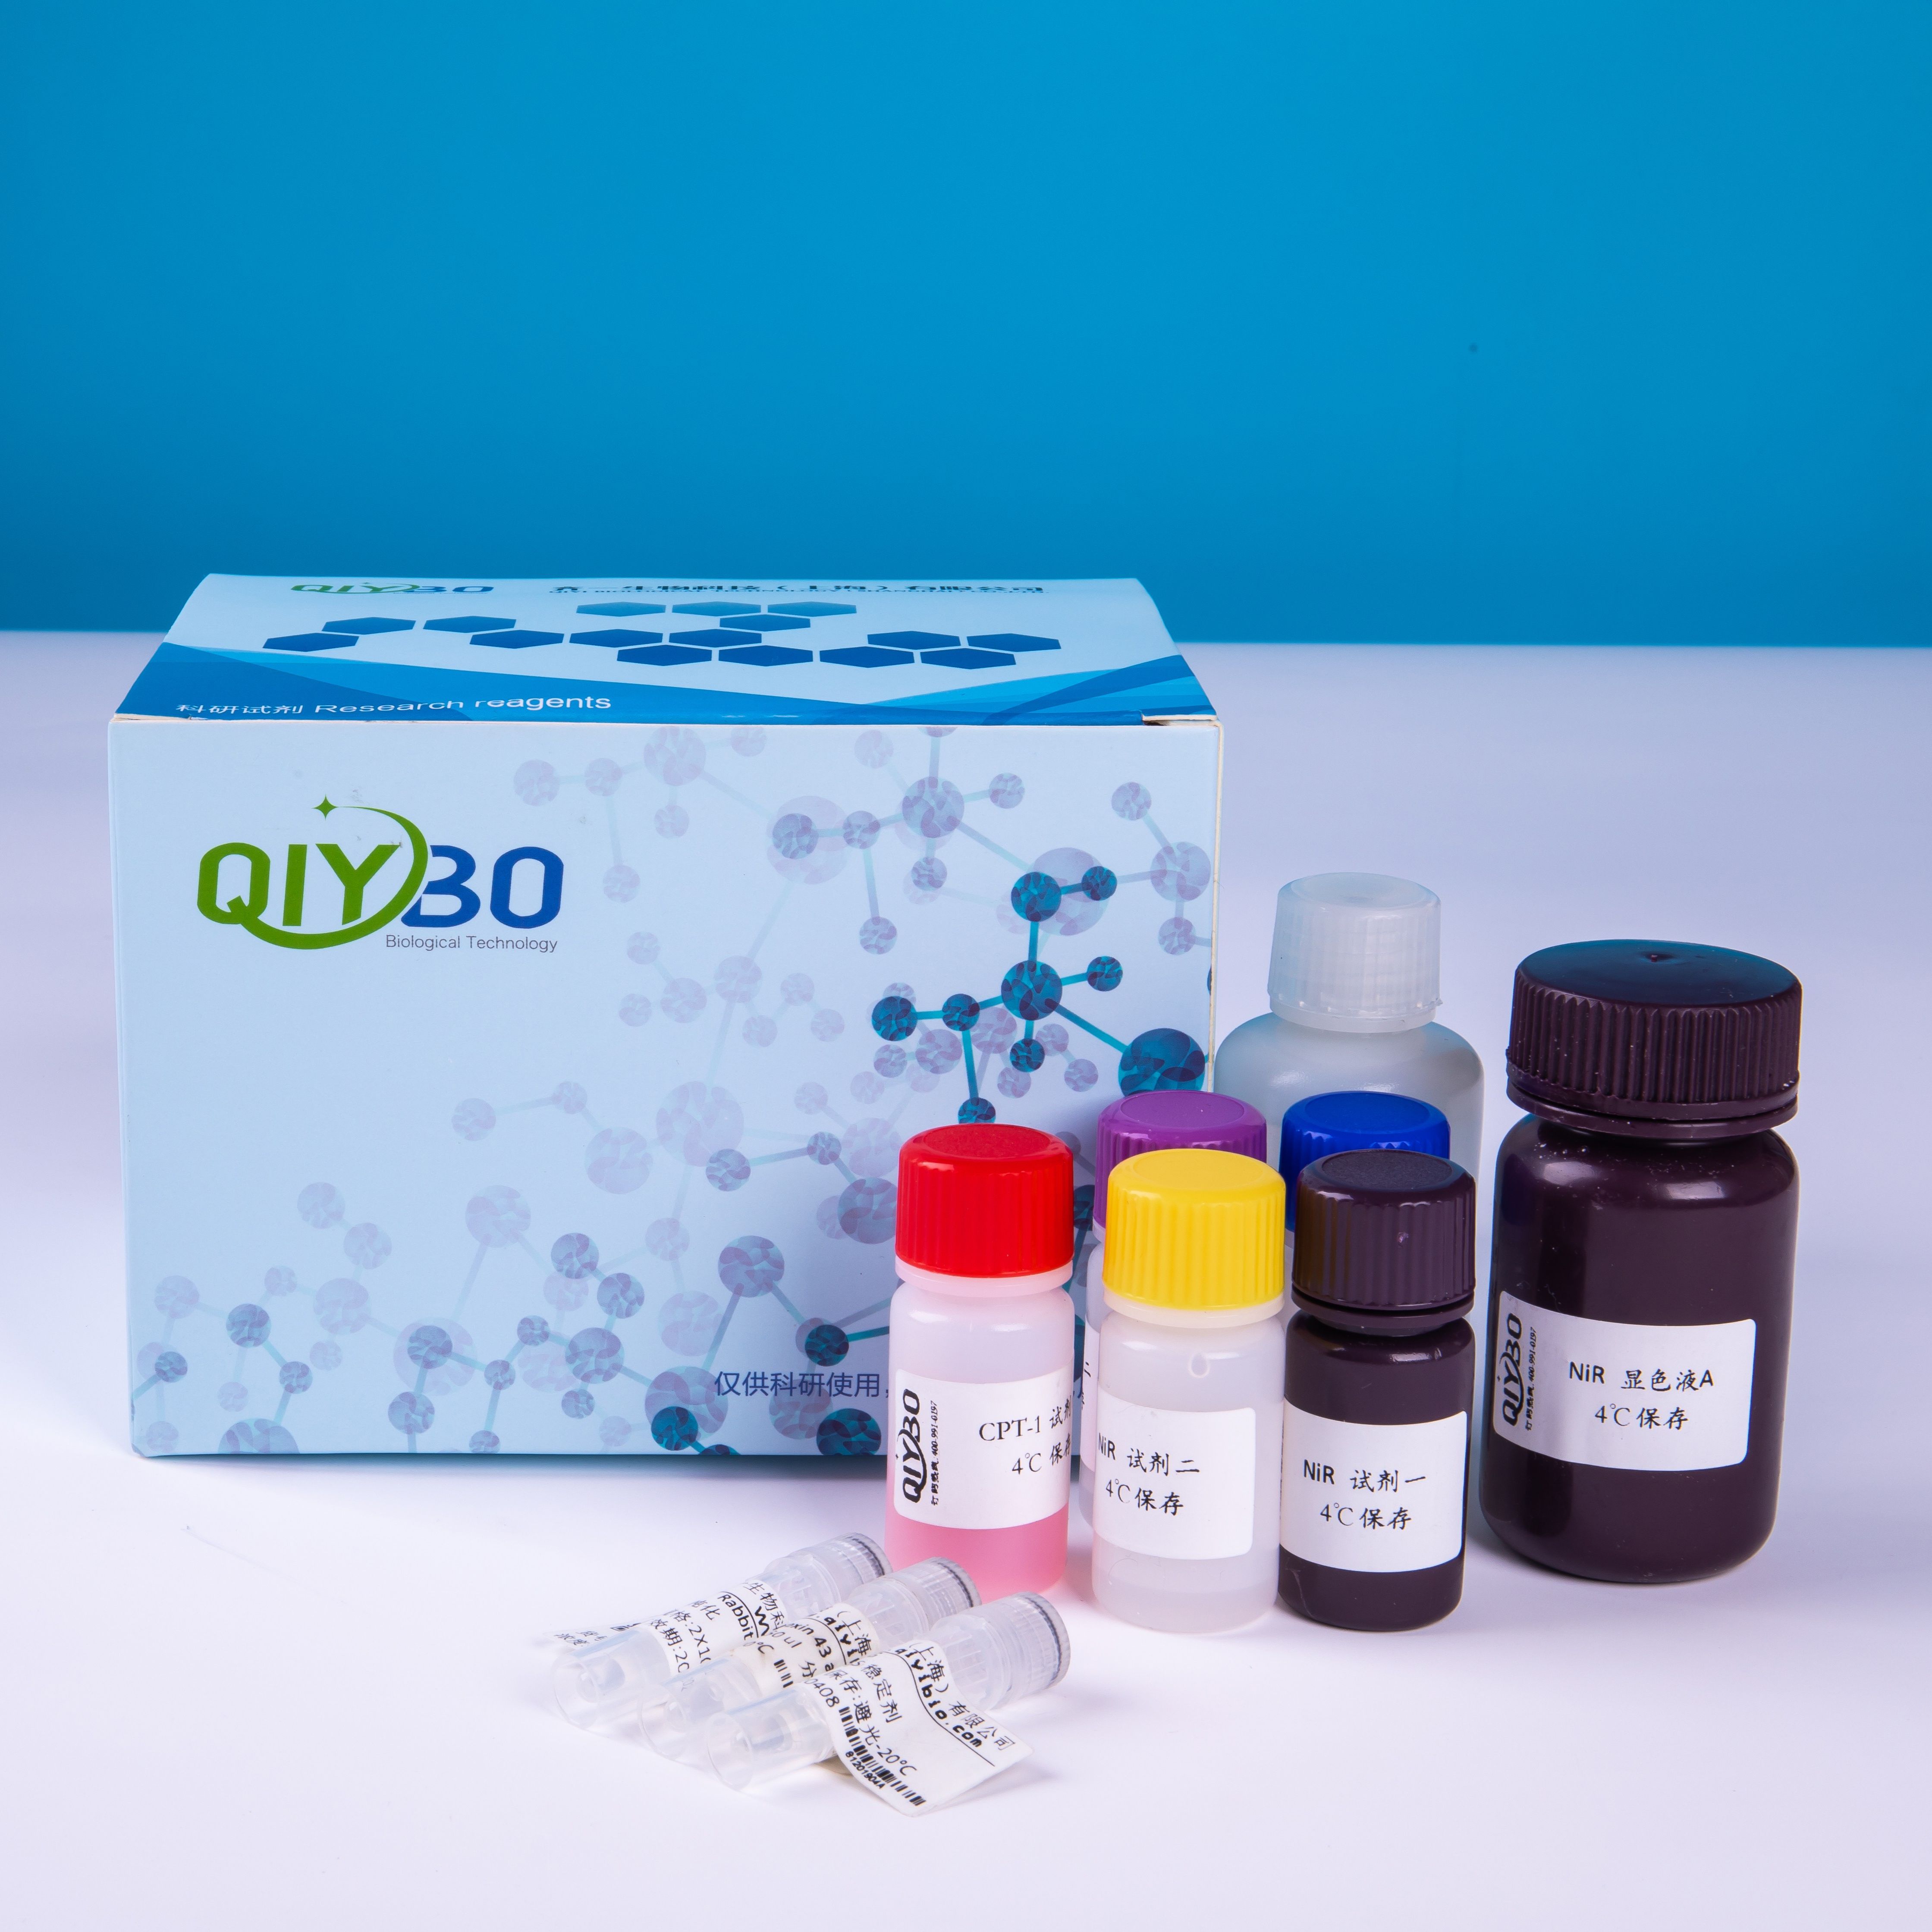 二磷酸核酮糖羧化酶/加氧酶(Rubisco)酶活测定试剂盒